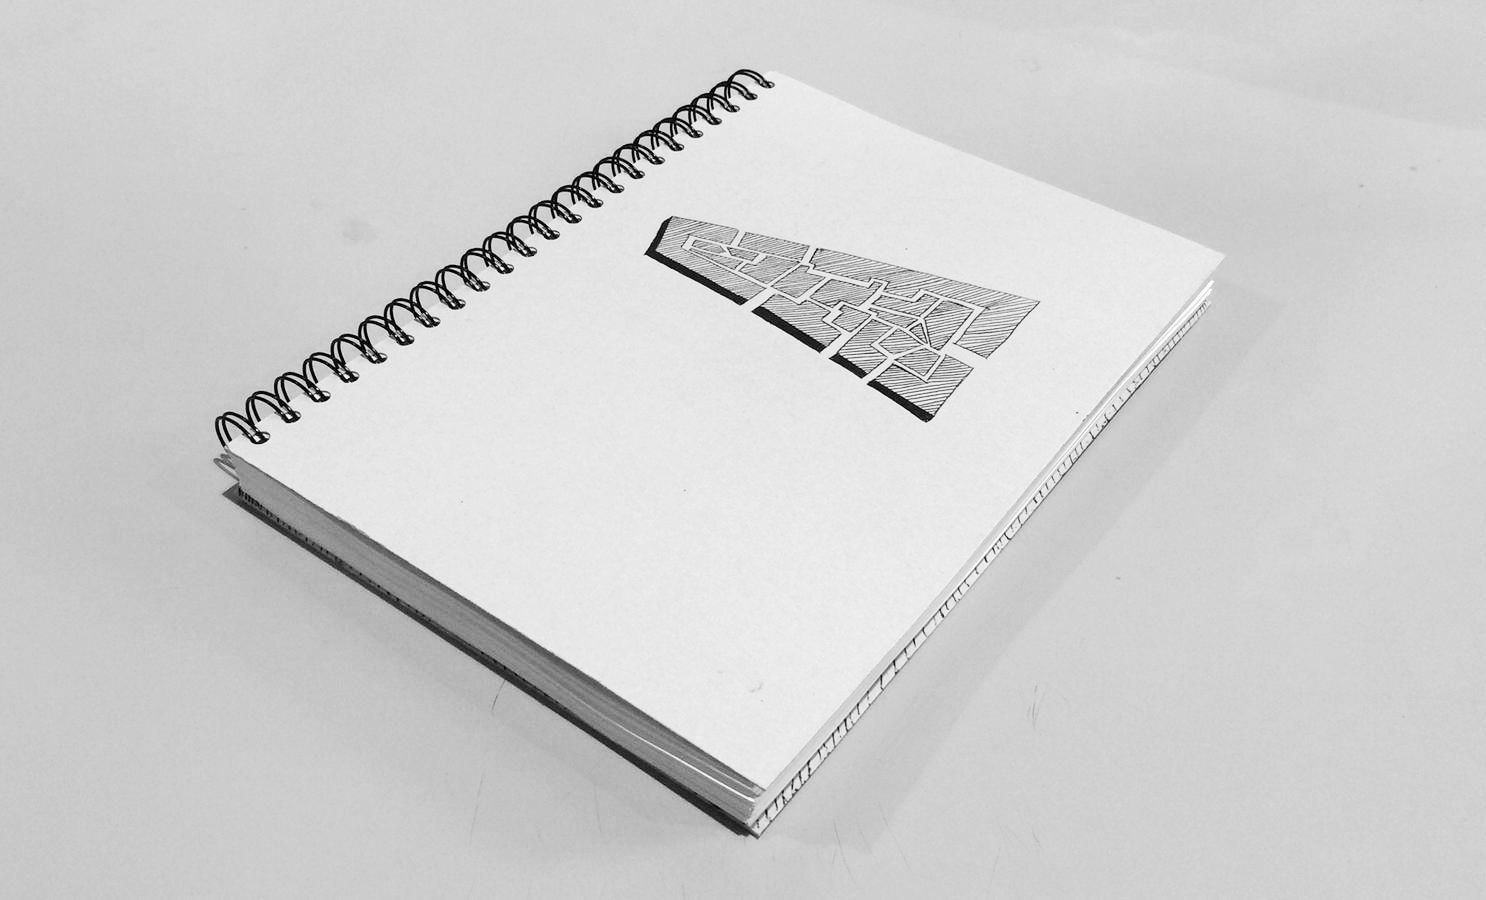 stedenbouw essay verslag typografie opmaak annelou van Griensven Annemarie geurink de vormforensen boek print drukwerk ontwerp arnhem stedenbouw architectuur naslagwerk jaarverslag